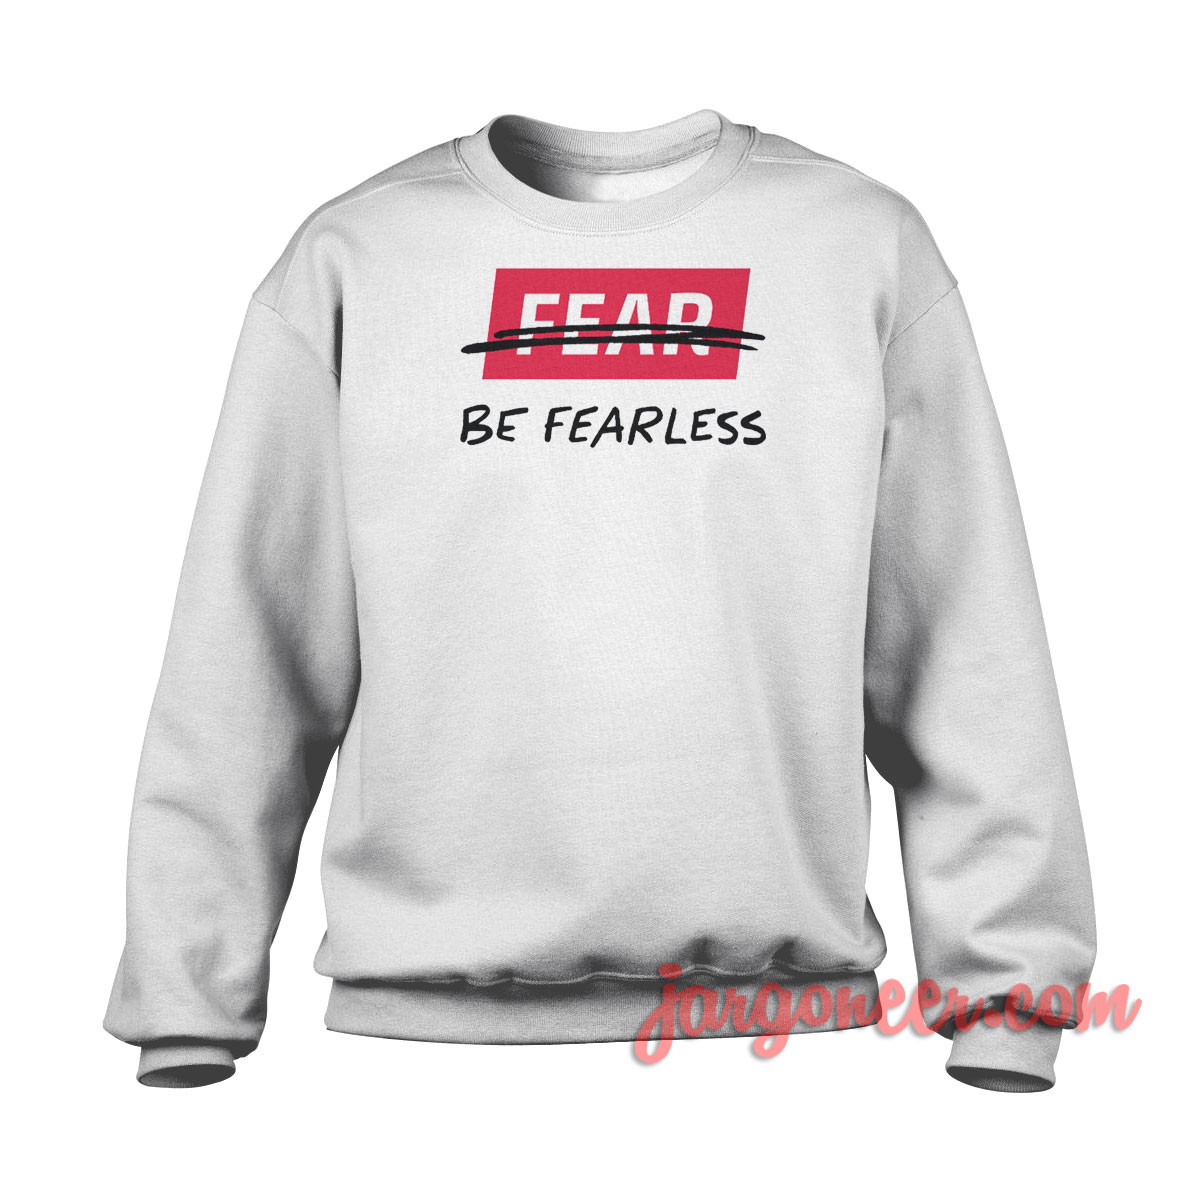 Fearless 1 - Shop Unique Graphic Cool Shirt Designs